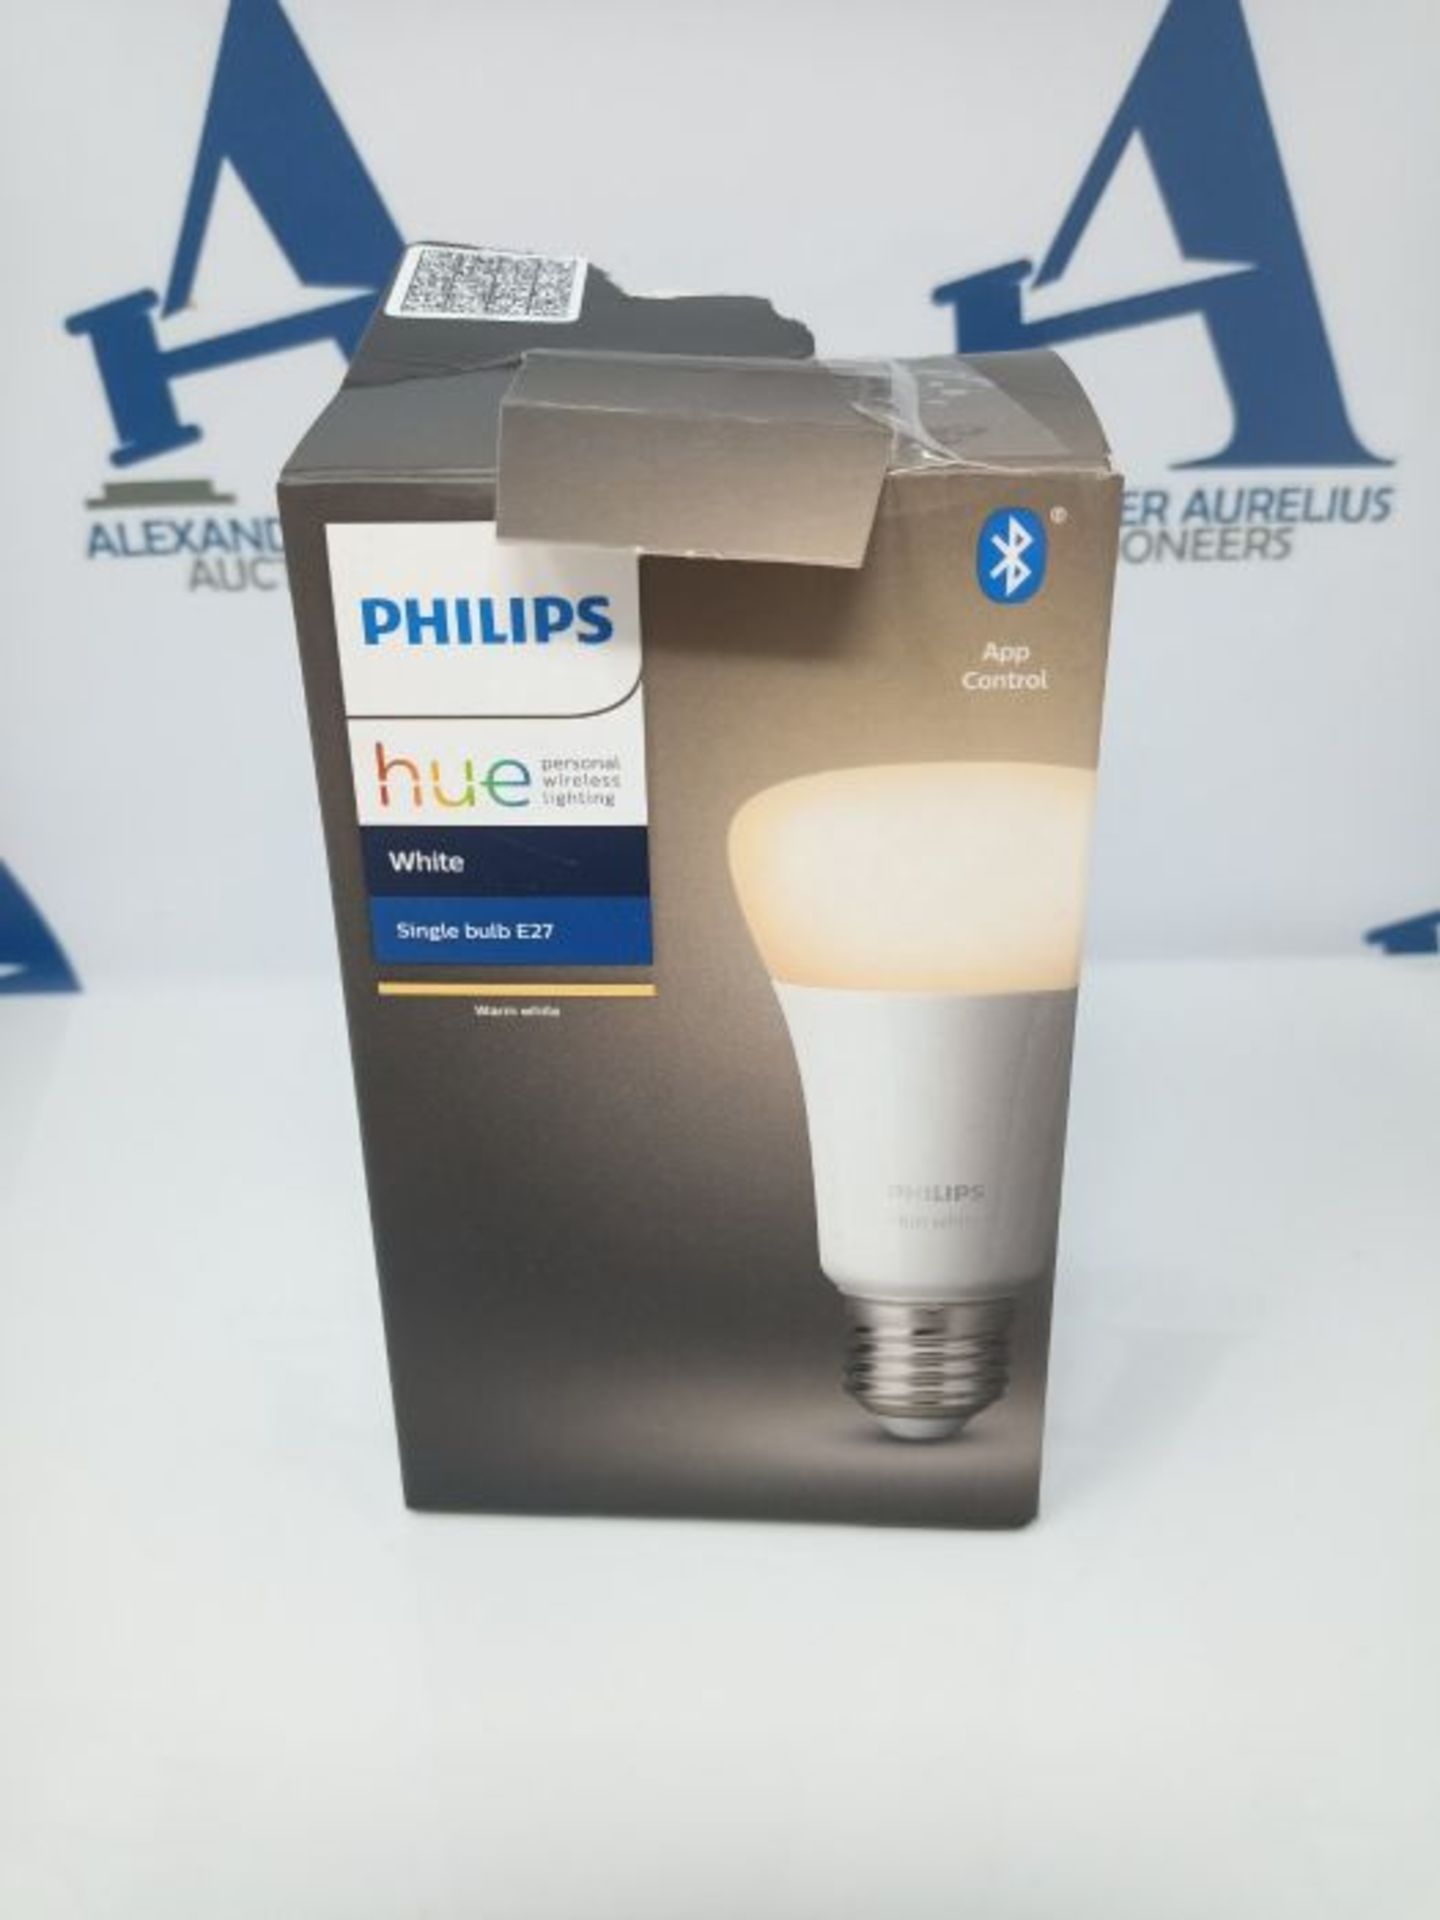 Philips Hue White Lampadina LED Connessa, con Bluetooth, Attacco E27, Dimmerabile, 60W - Image 2 of 3